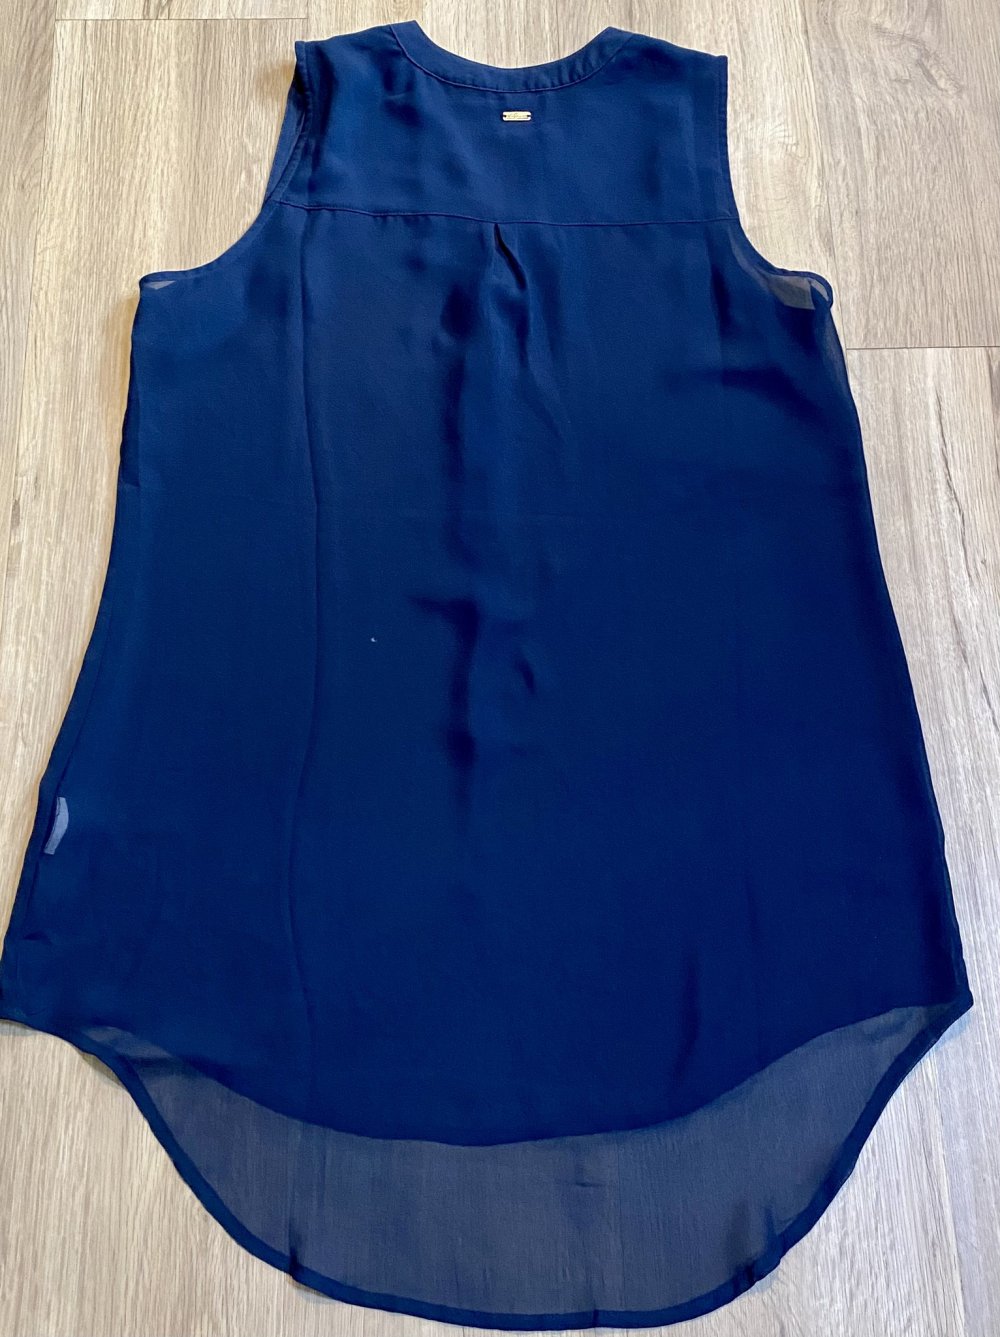 Damen Bluse Sommer leicht Gr.40 in Blau von s.Oliver NW